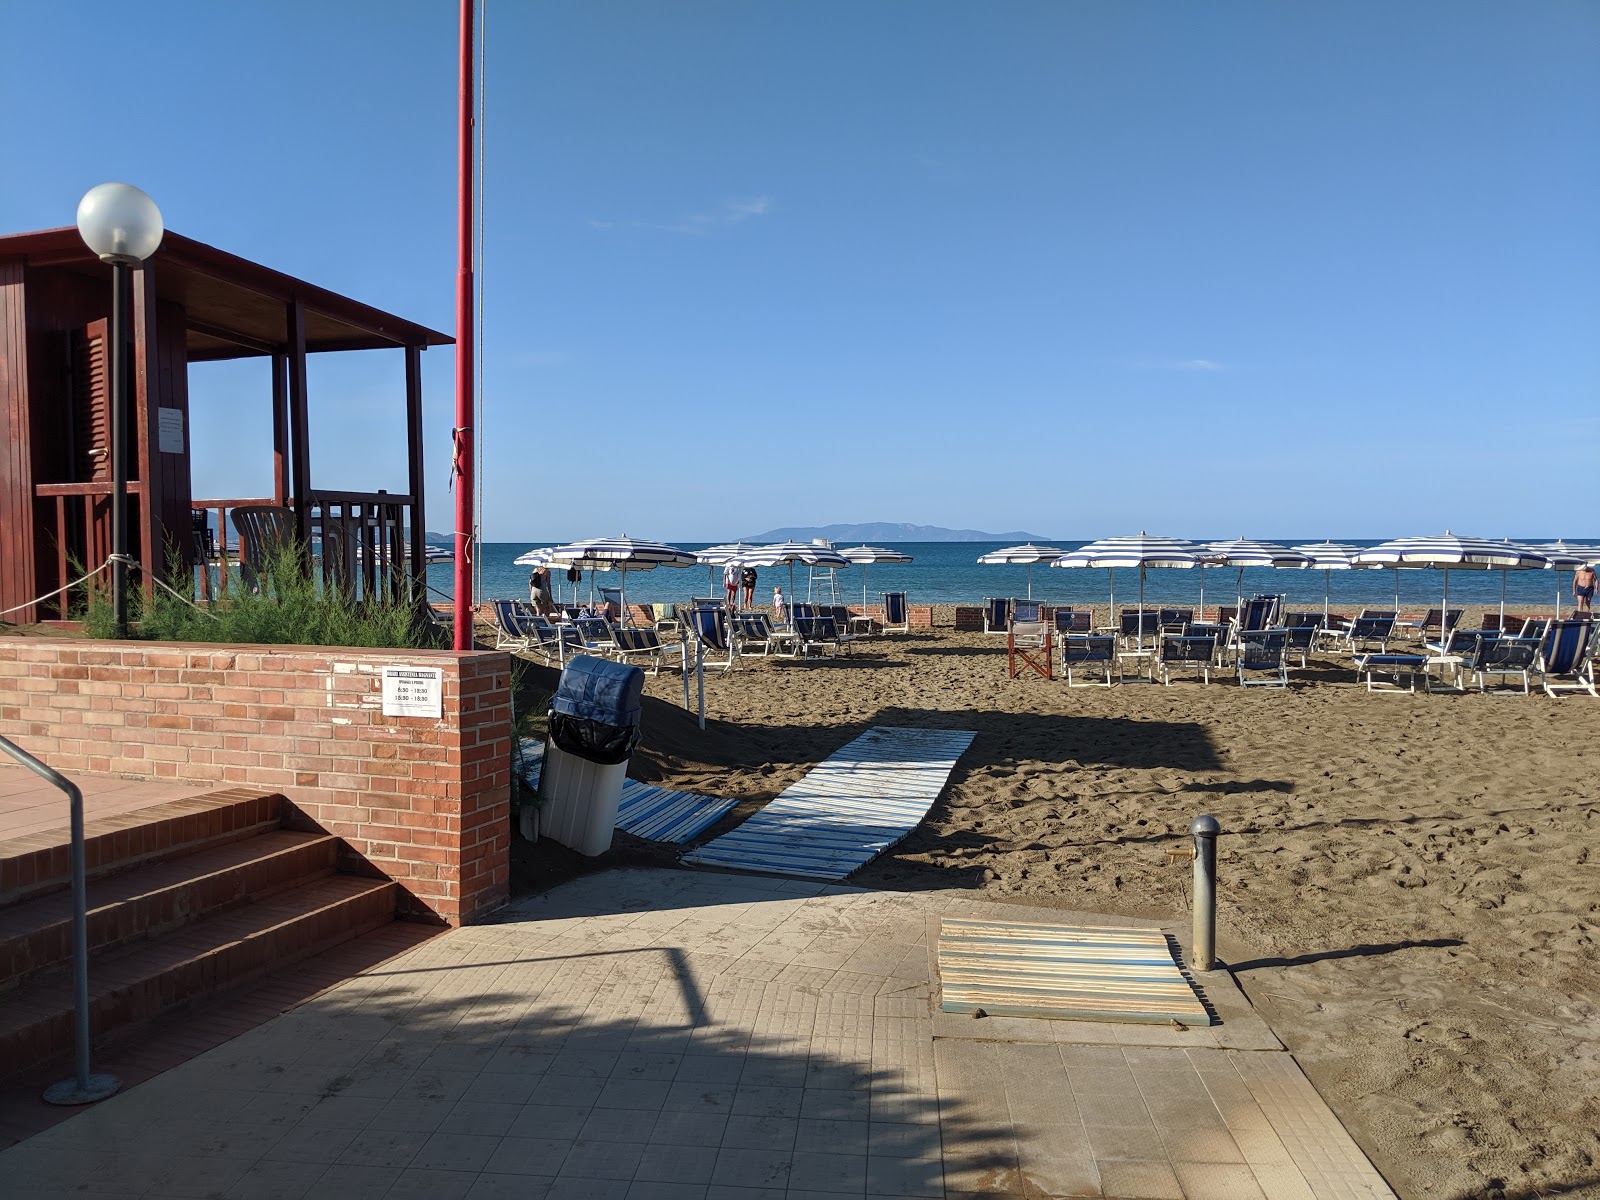 Foto de Spiaggia Dell'Osa - lugar popular entre los conocedores del relax